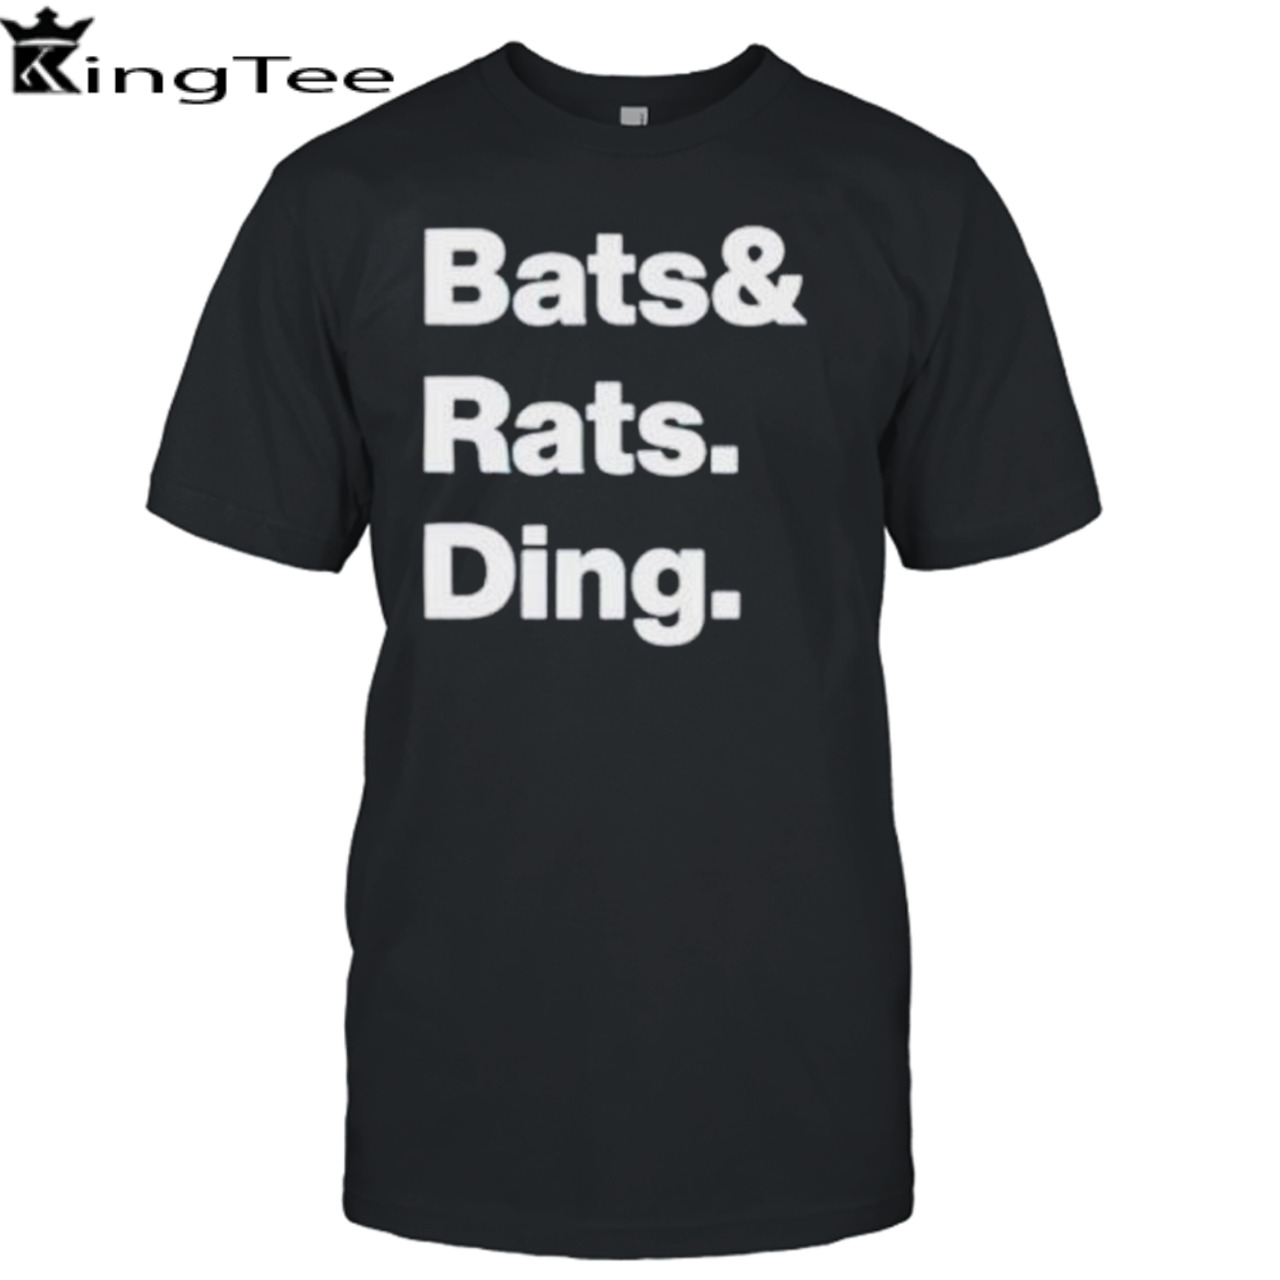 Bats and rats ding shirt